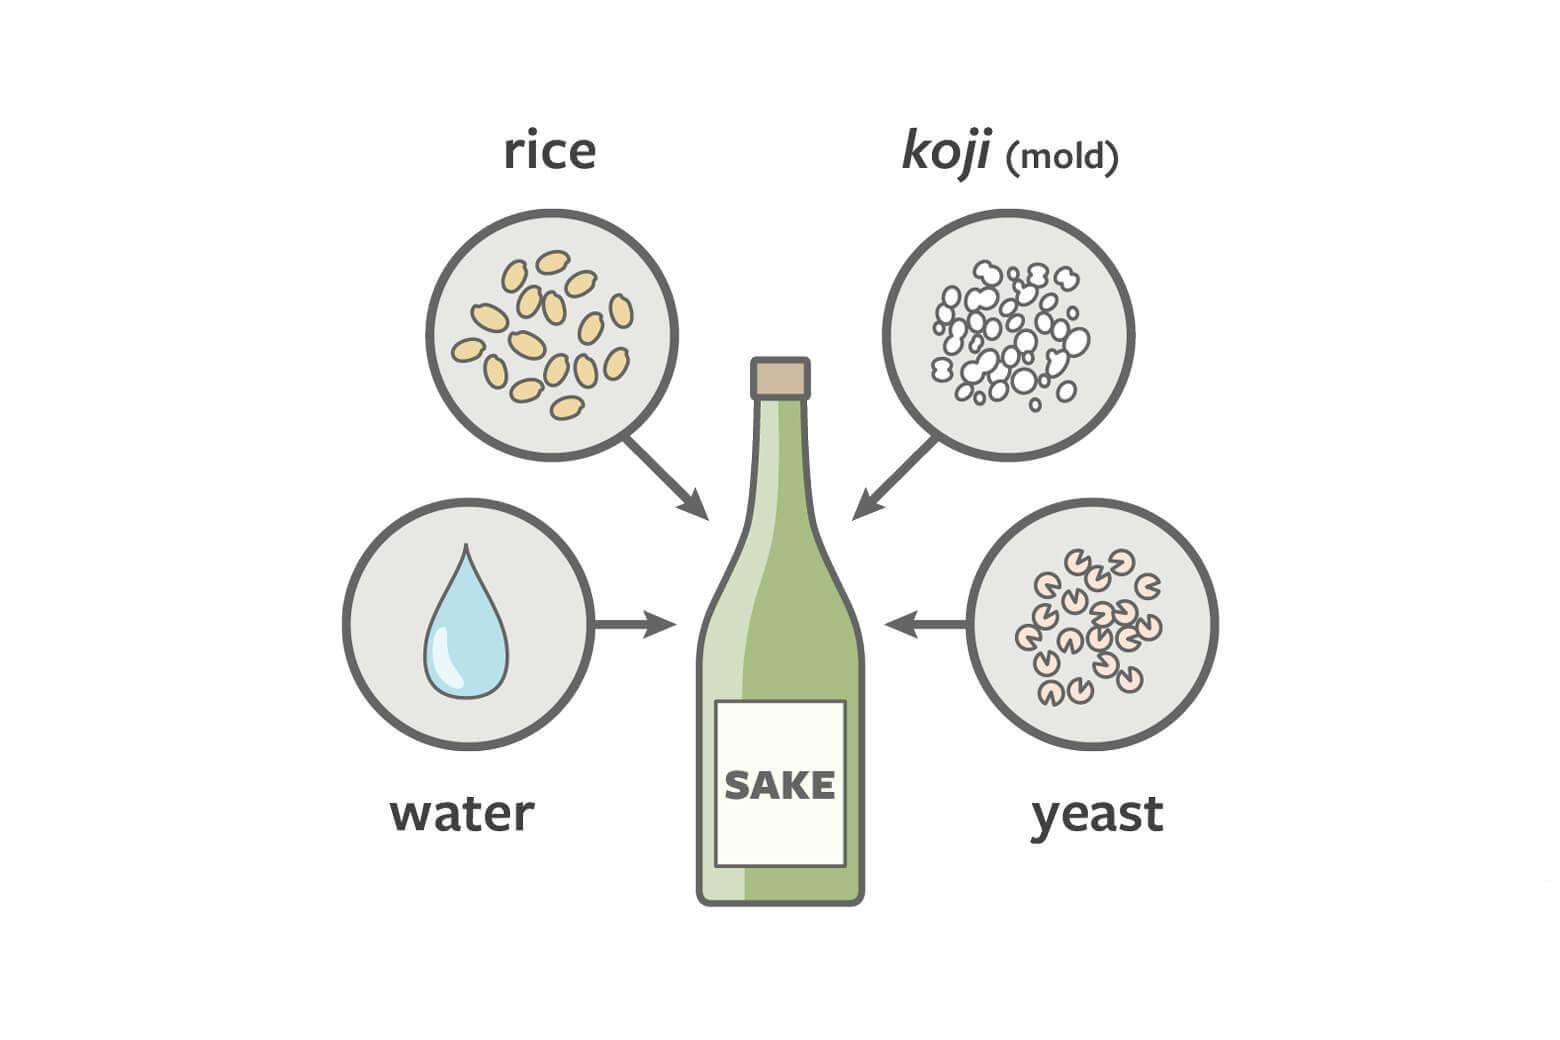 The four basic ingredients for sake